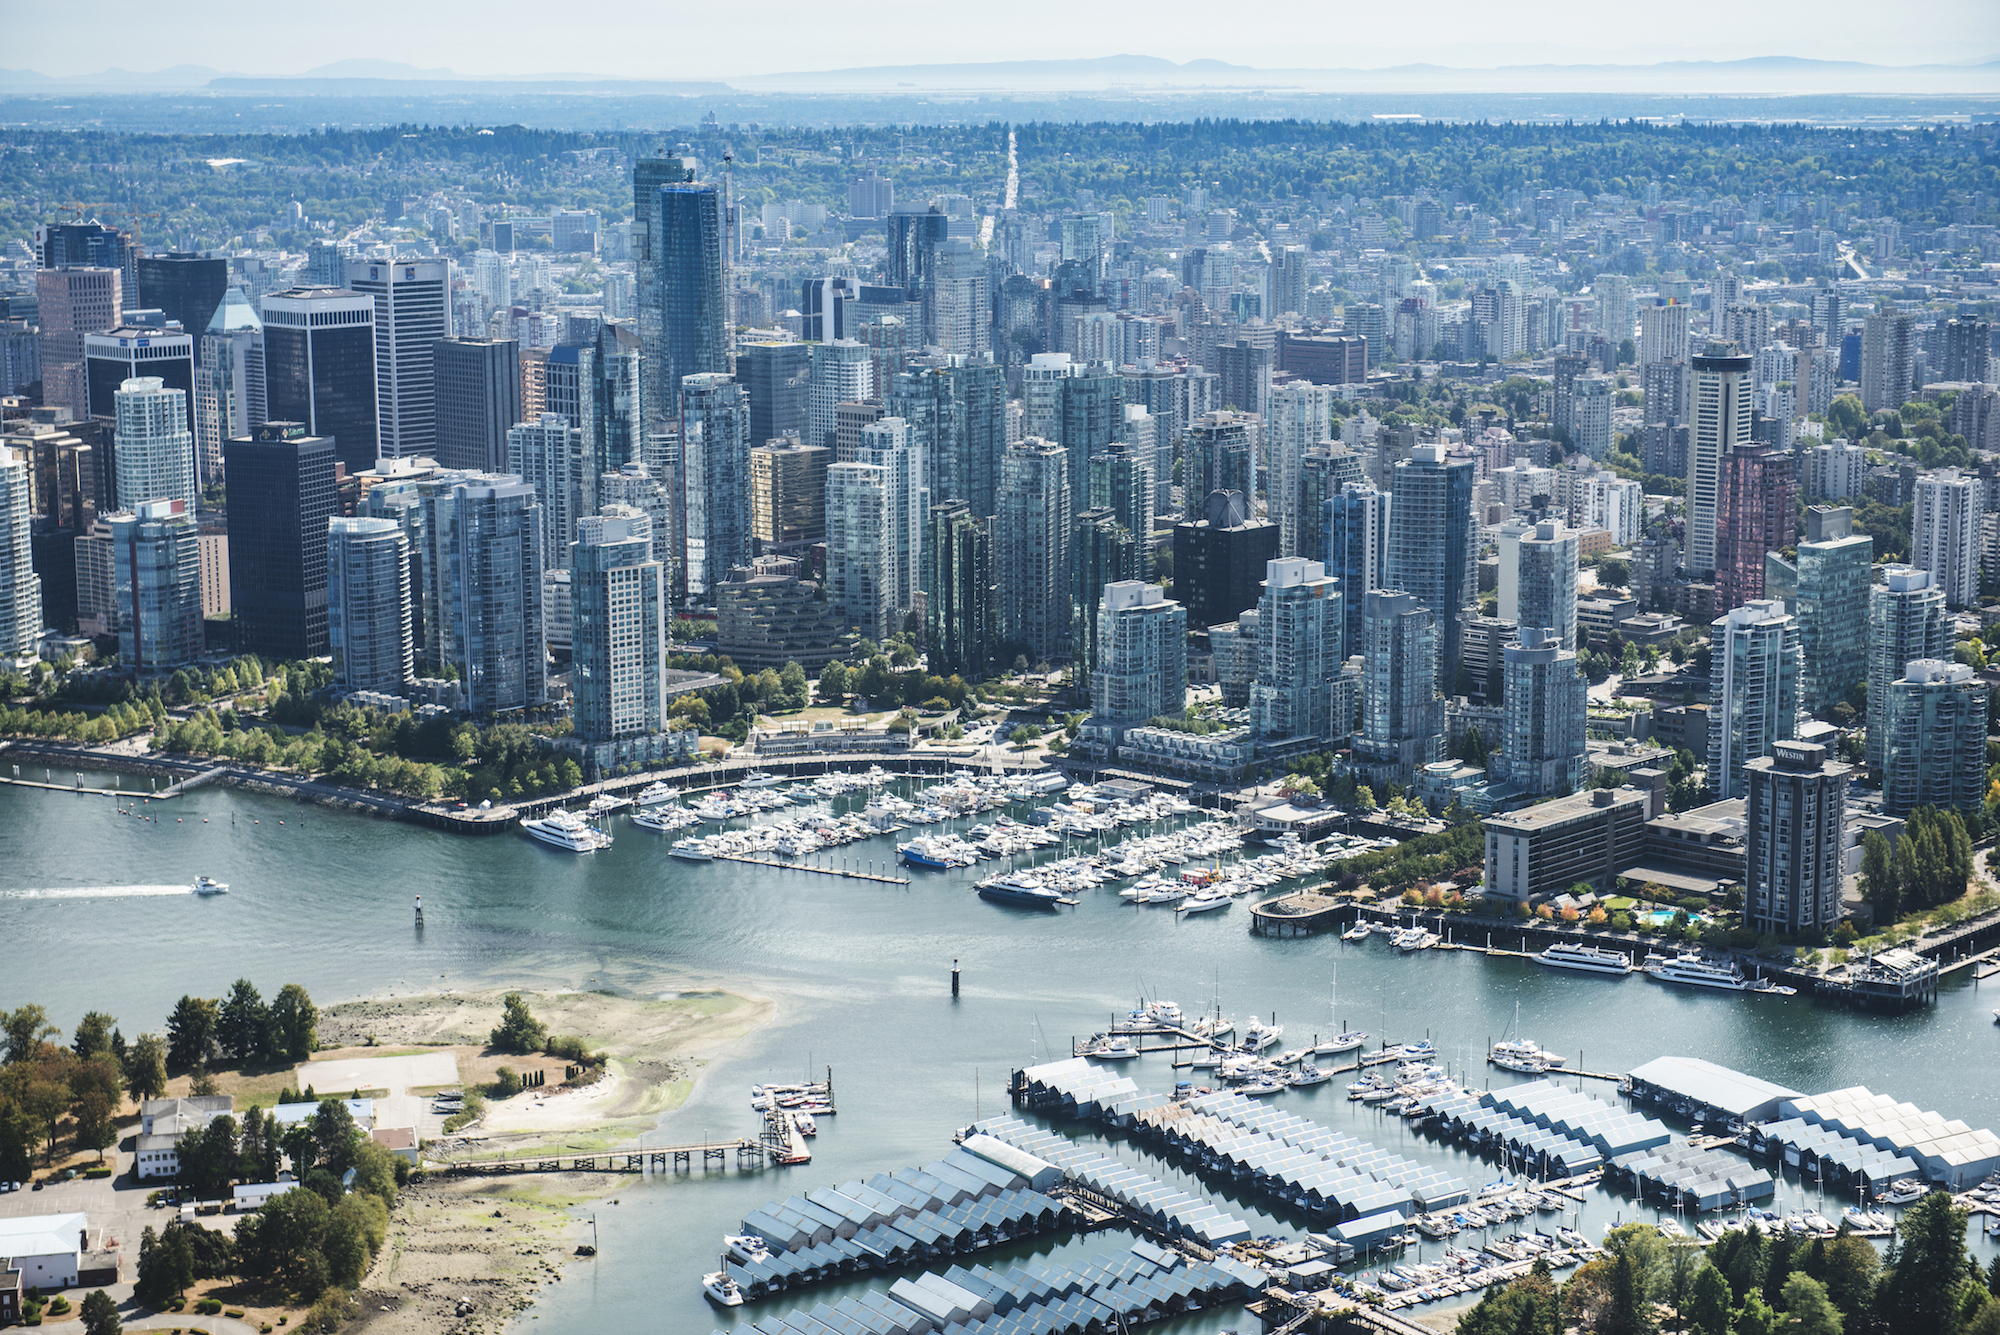 با بالا رفتن نرخ بهره در ونکوور و تورنتو، بازندگان اصلی بازار مسکن صاحبخانه های جدیدی هستند که ملک شان را اجاره داده اند